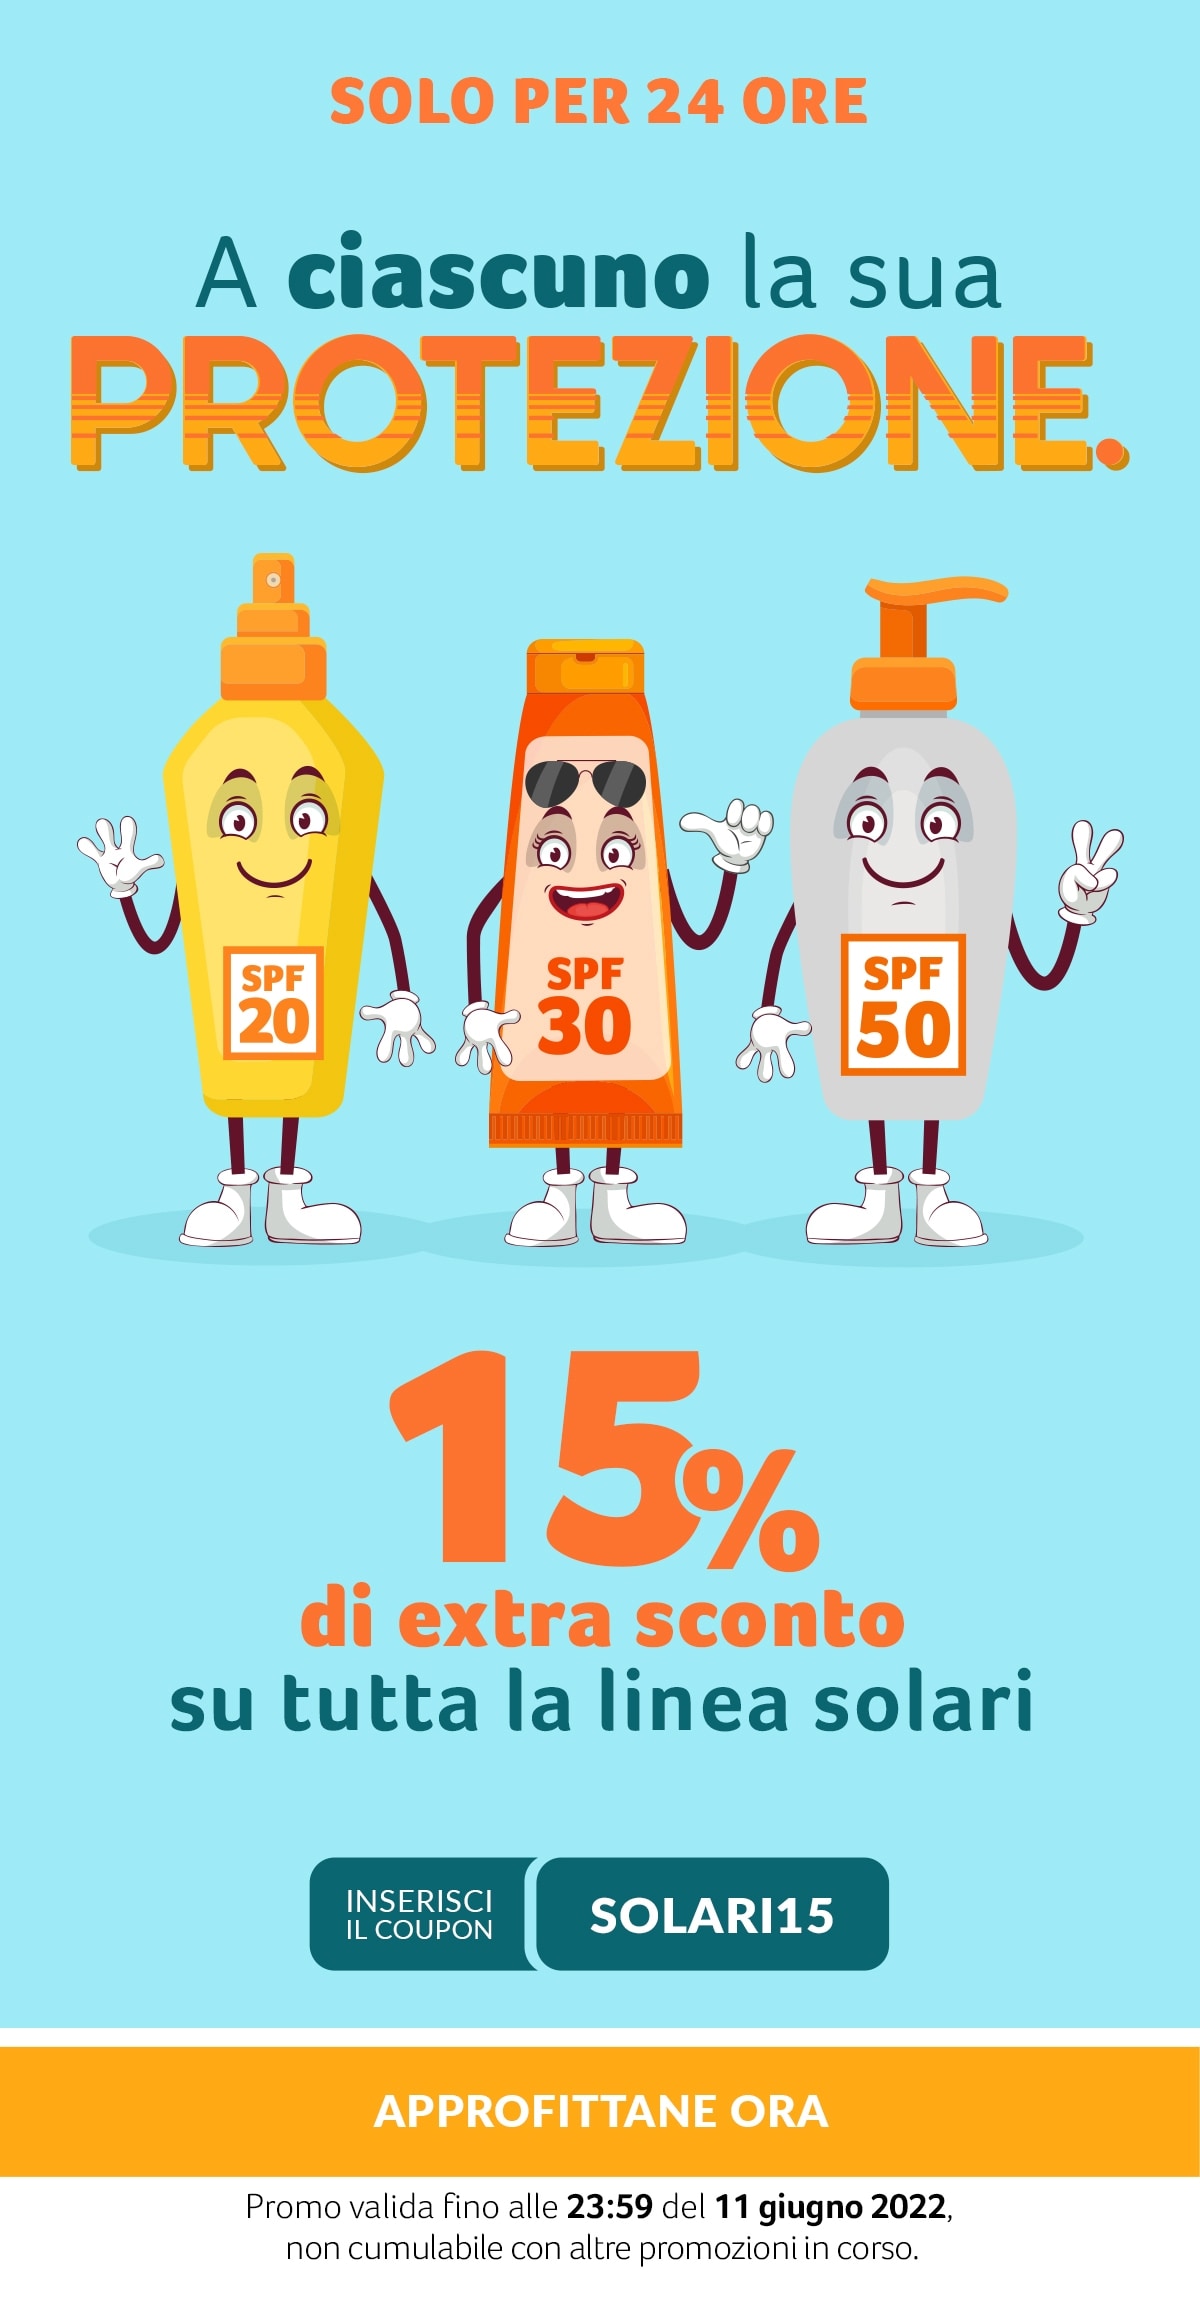 Solo per 24 ore, -15% su tutti i solari con coupon SOLARI15